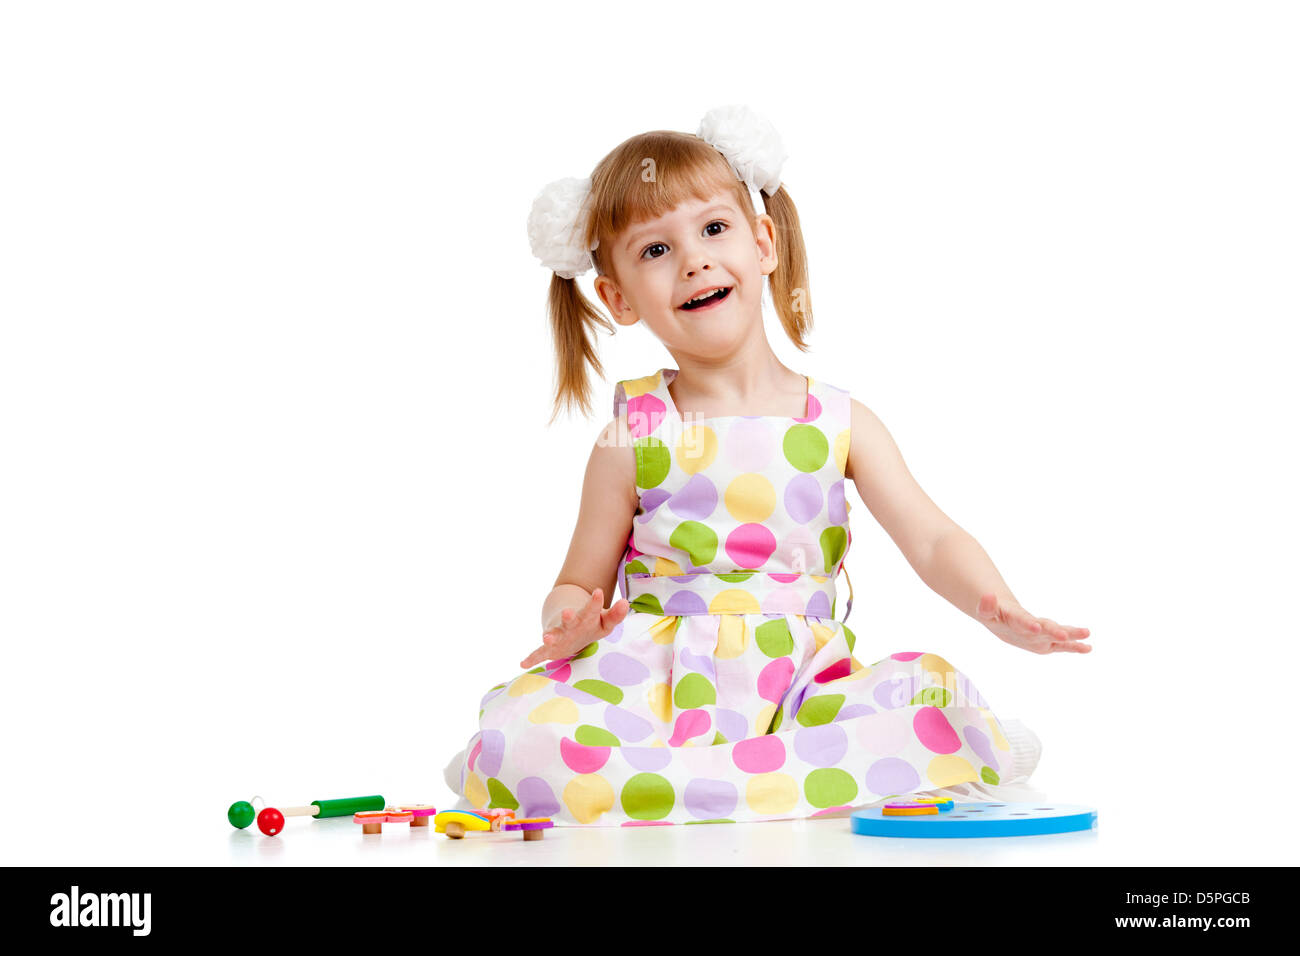 Lustige kleine Mädchen spielen mit Spielzeug, isoliert auf weiß Stockfoto